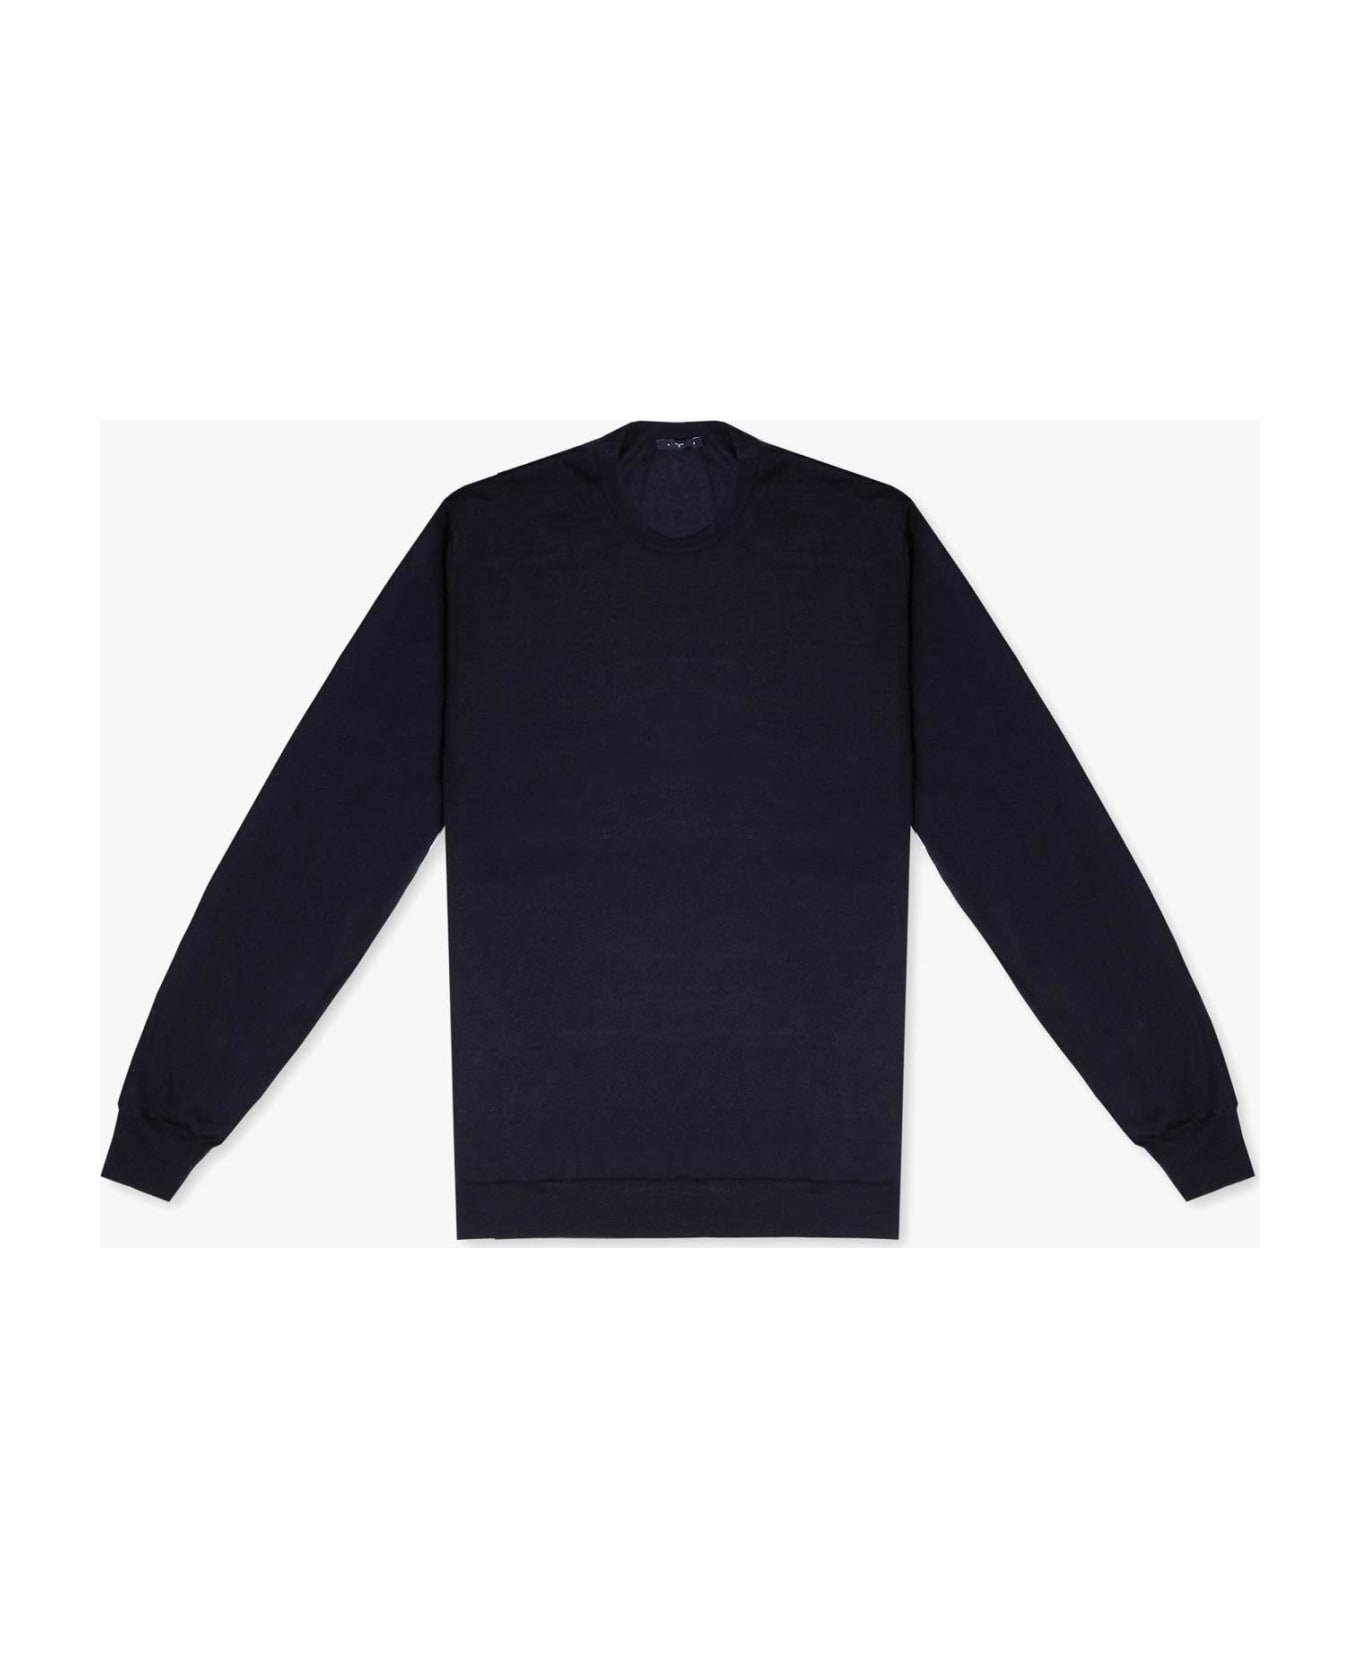 Larusmiani Sweater 'pullman' Sweater - Navy